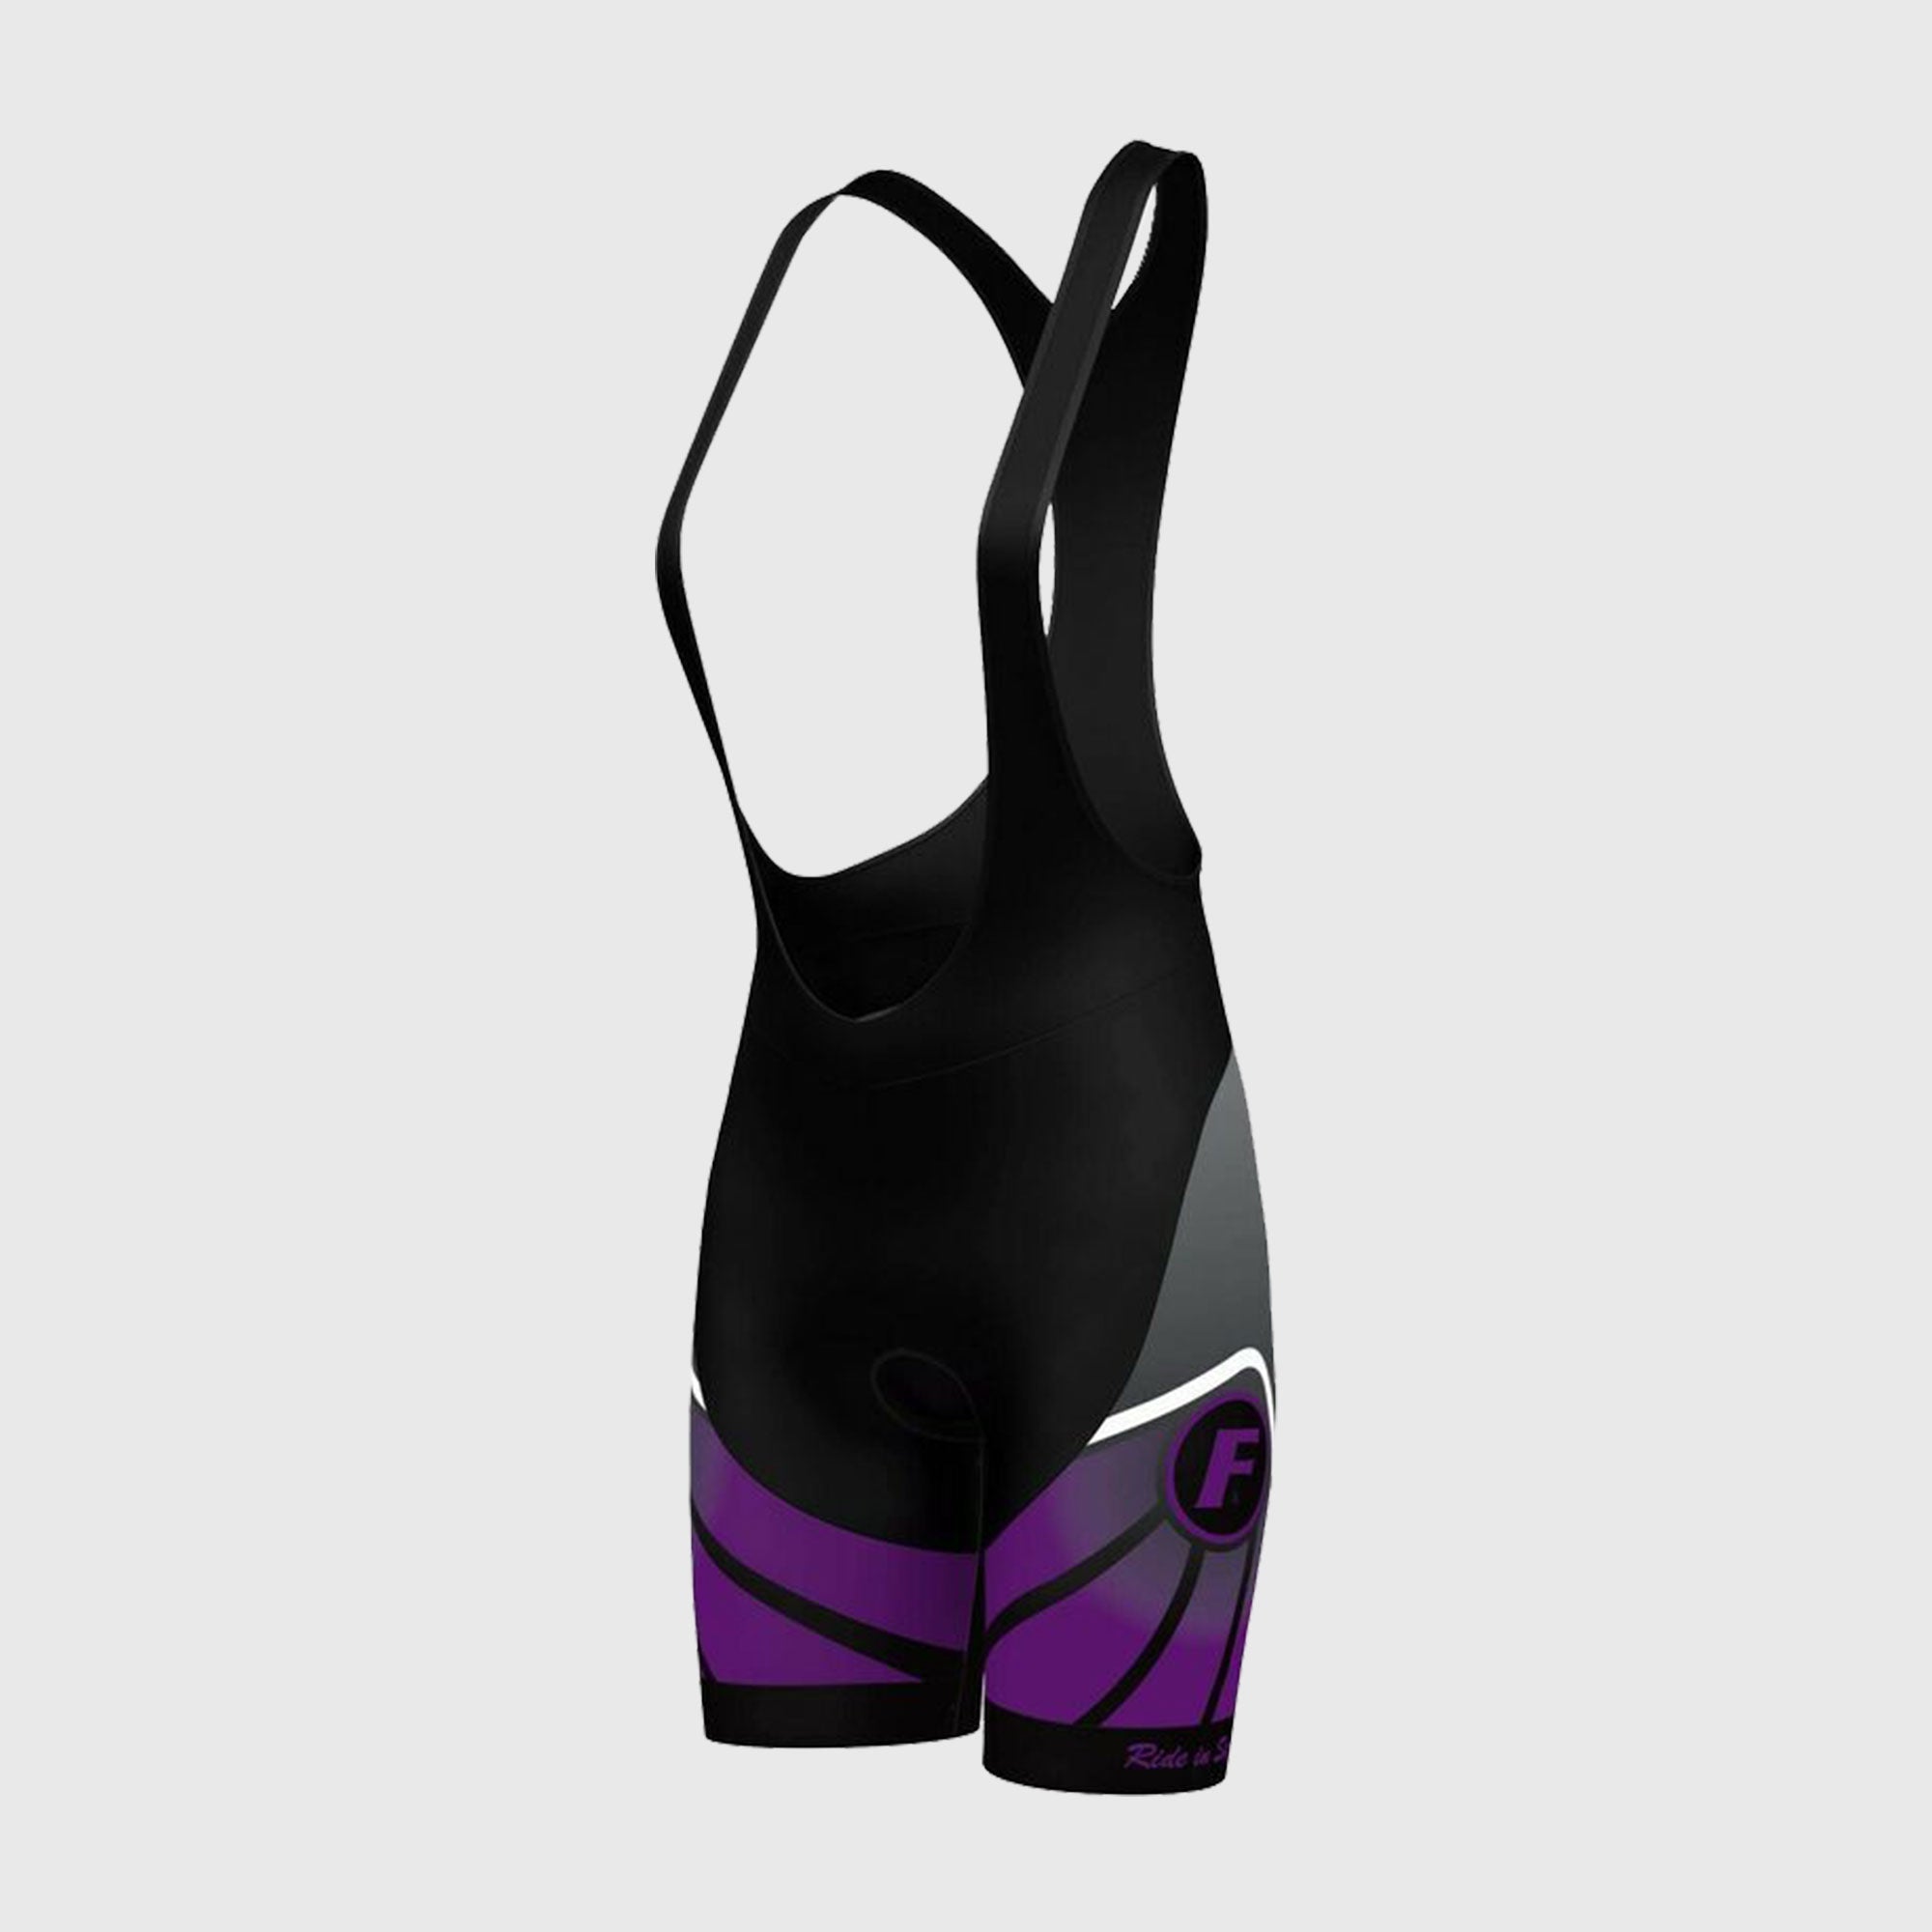 Fdx Signature Purple Women's Summer Cycling Padded Bib Shorts